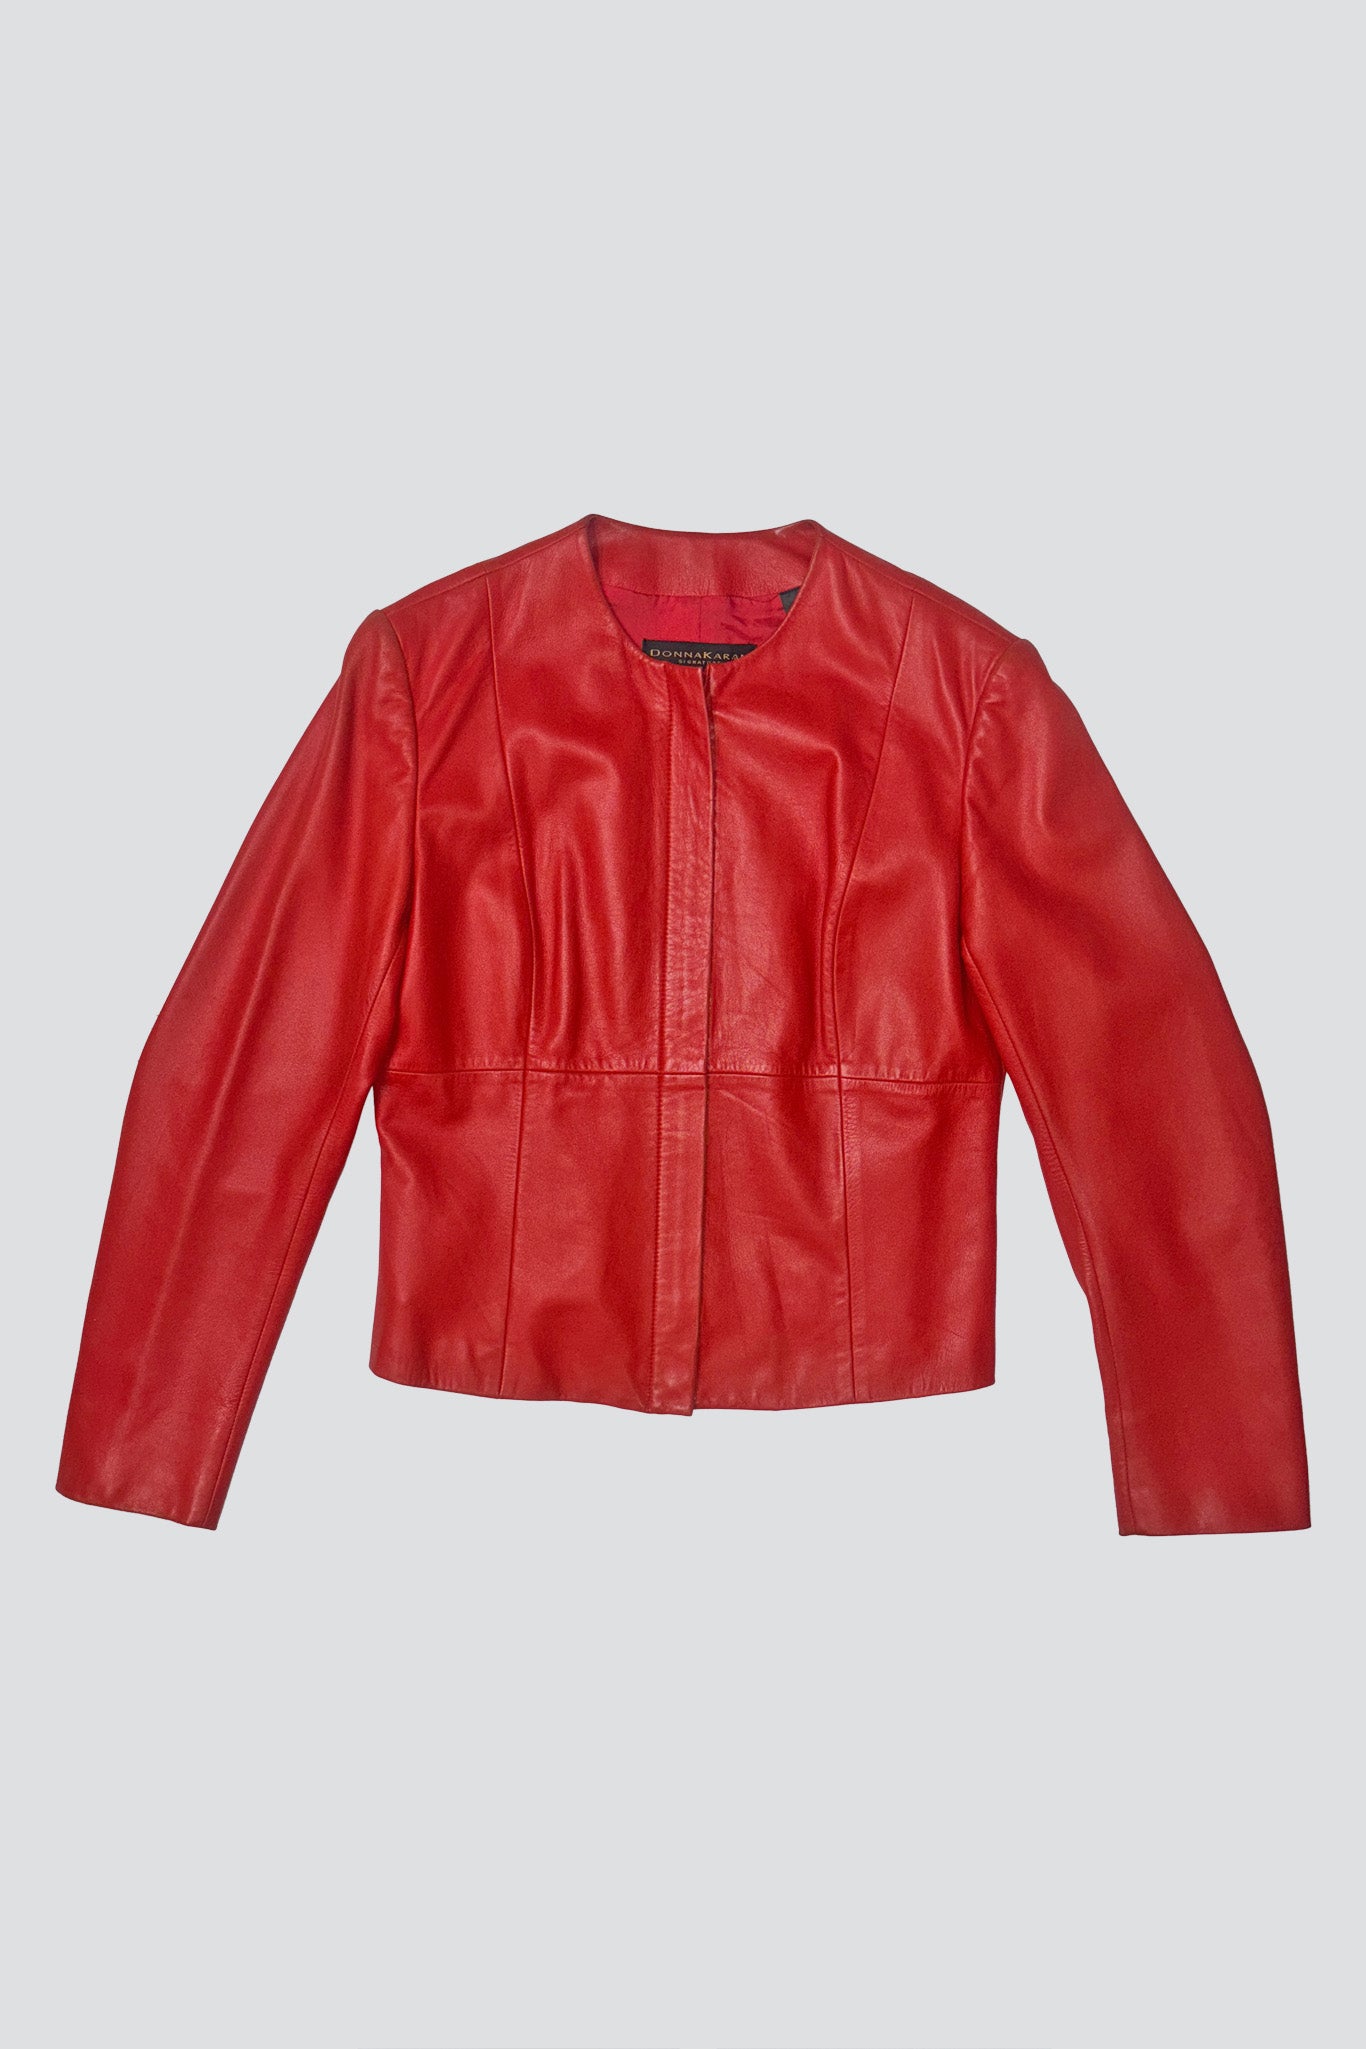 Donna Karan Hot Red Leather Short Jacket